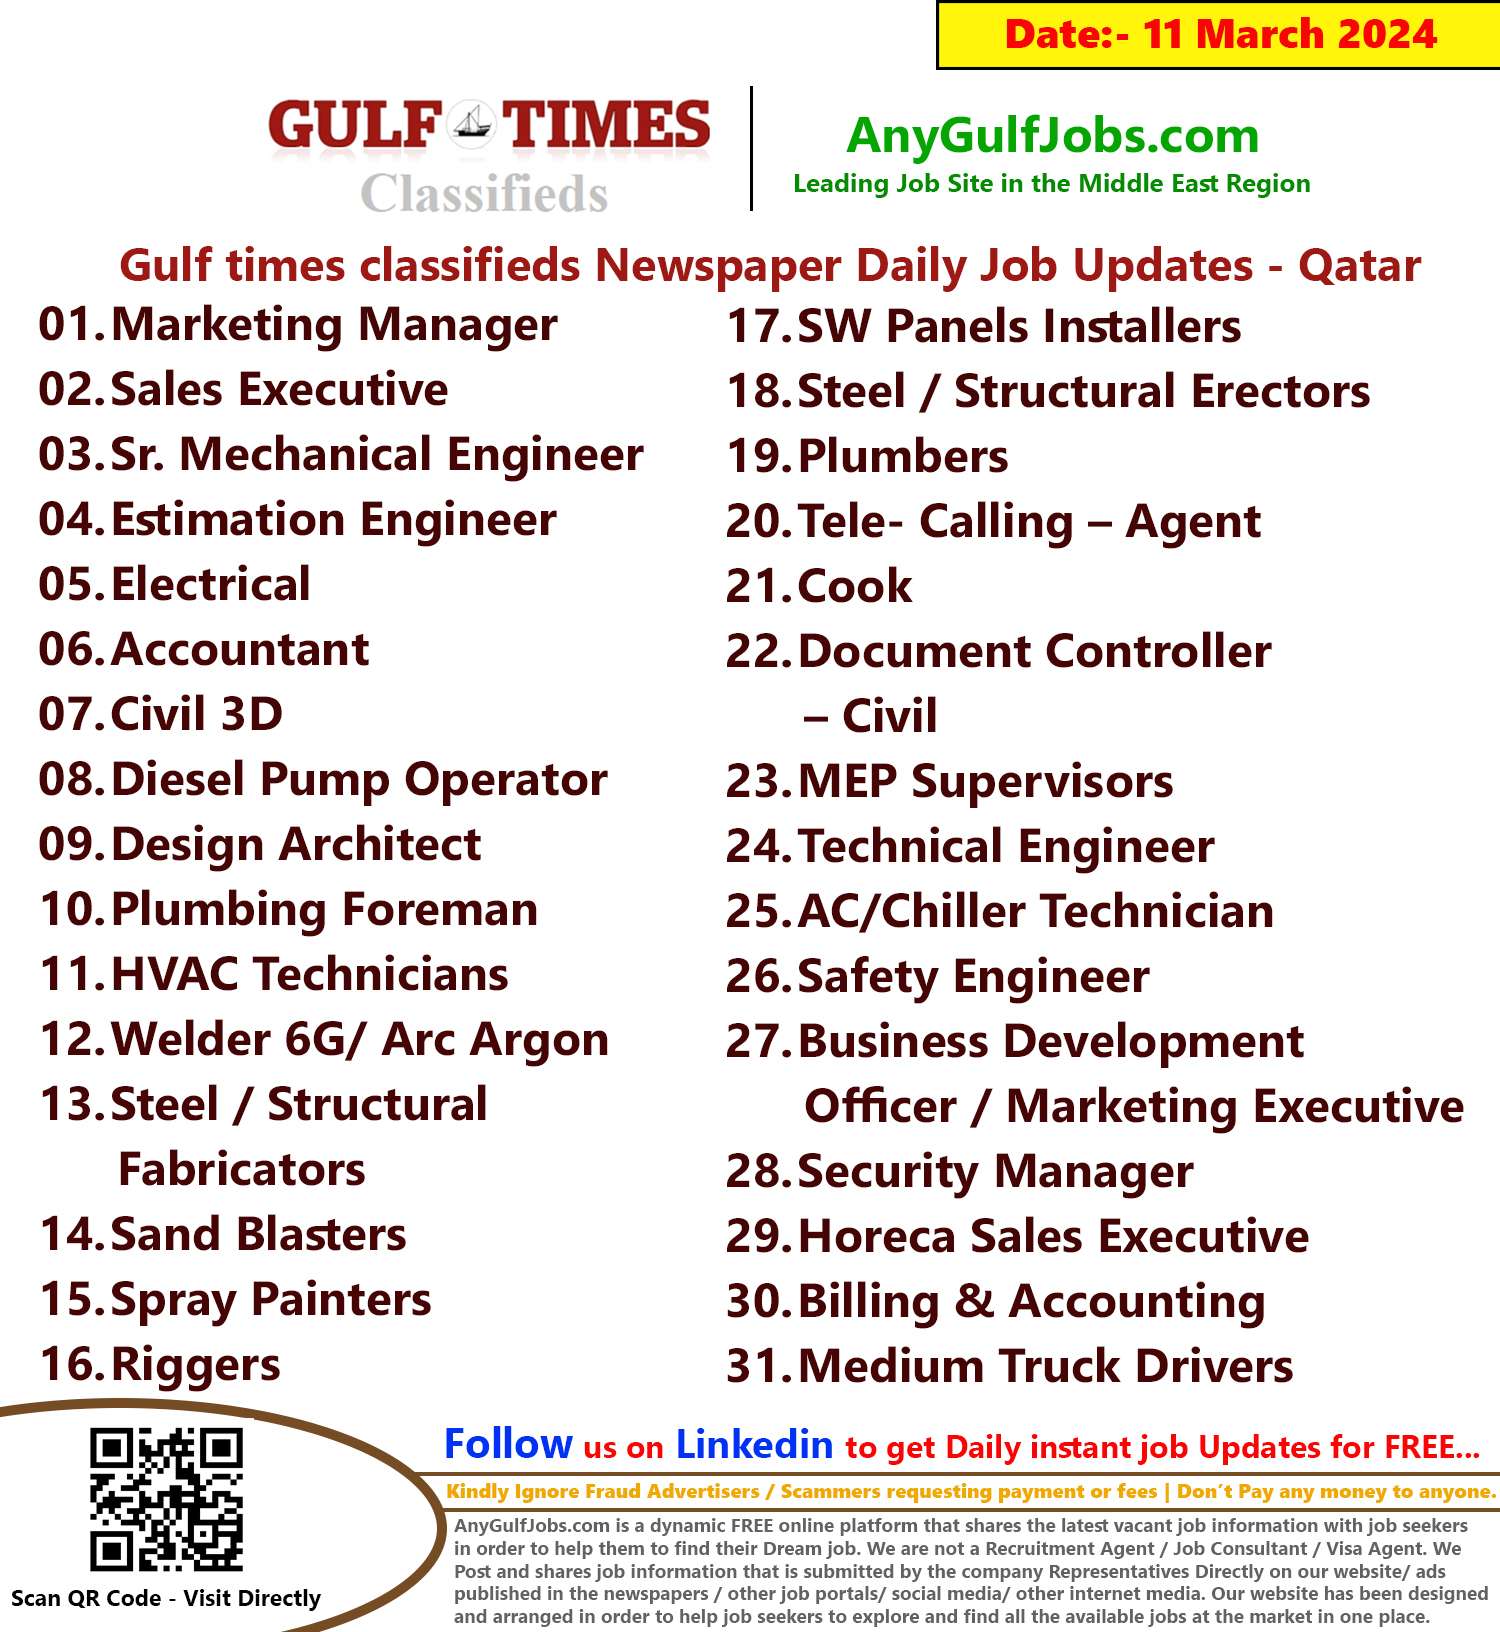 Gulf Times Classifieds Job Vacancies Qatar - 11 March 2024